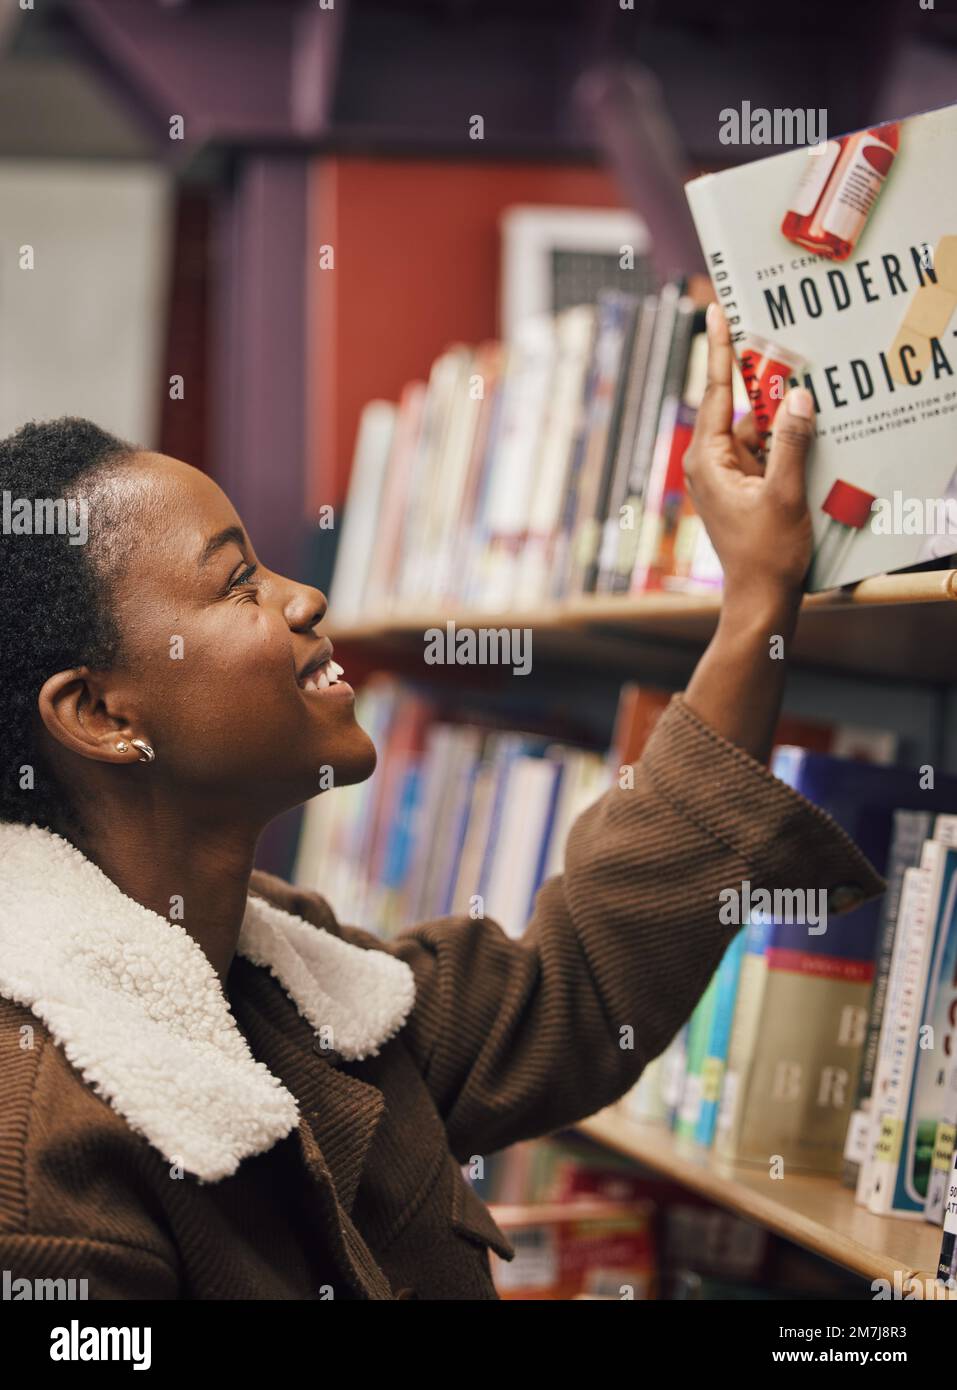 Schwarze Frau, Student und Buch in der Bibliothek für medizinische Untersuchung, Pillen und Gesundheitserziehung, lernen über pharmazeutische Medikamente. Informationen werden gelesen Stockfoto